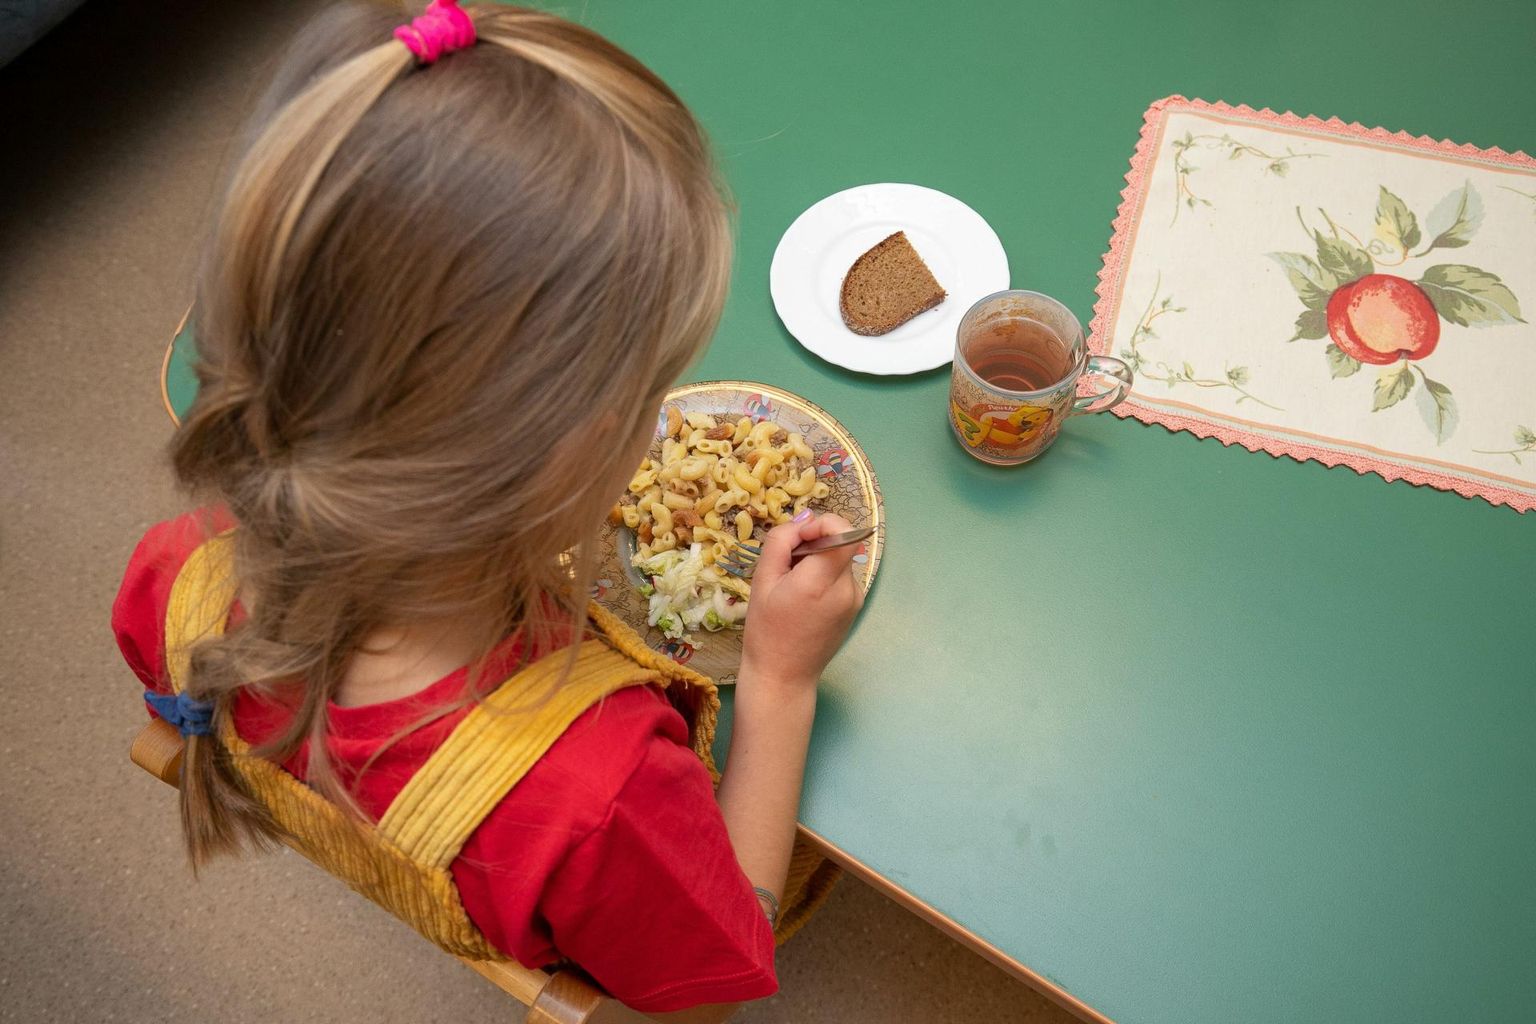 Viljandi lasteaedade laste lemmiktoidud on pastaroad ja püreesupid. Kõige rohkem jääb laste­aedades järele hommiku­putru.